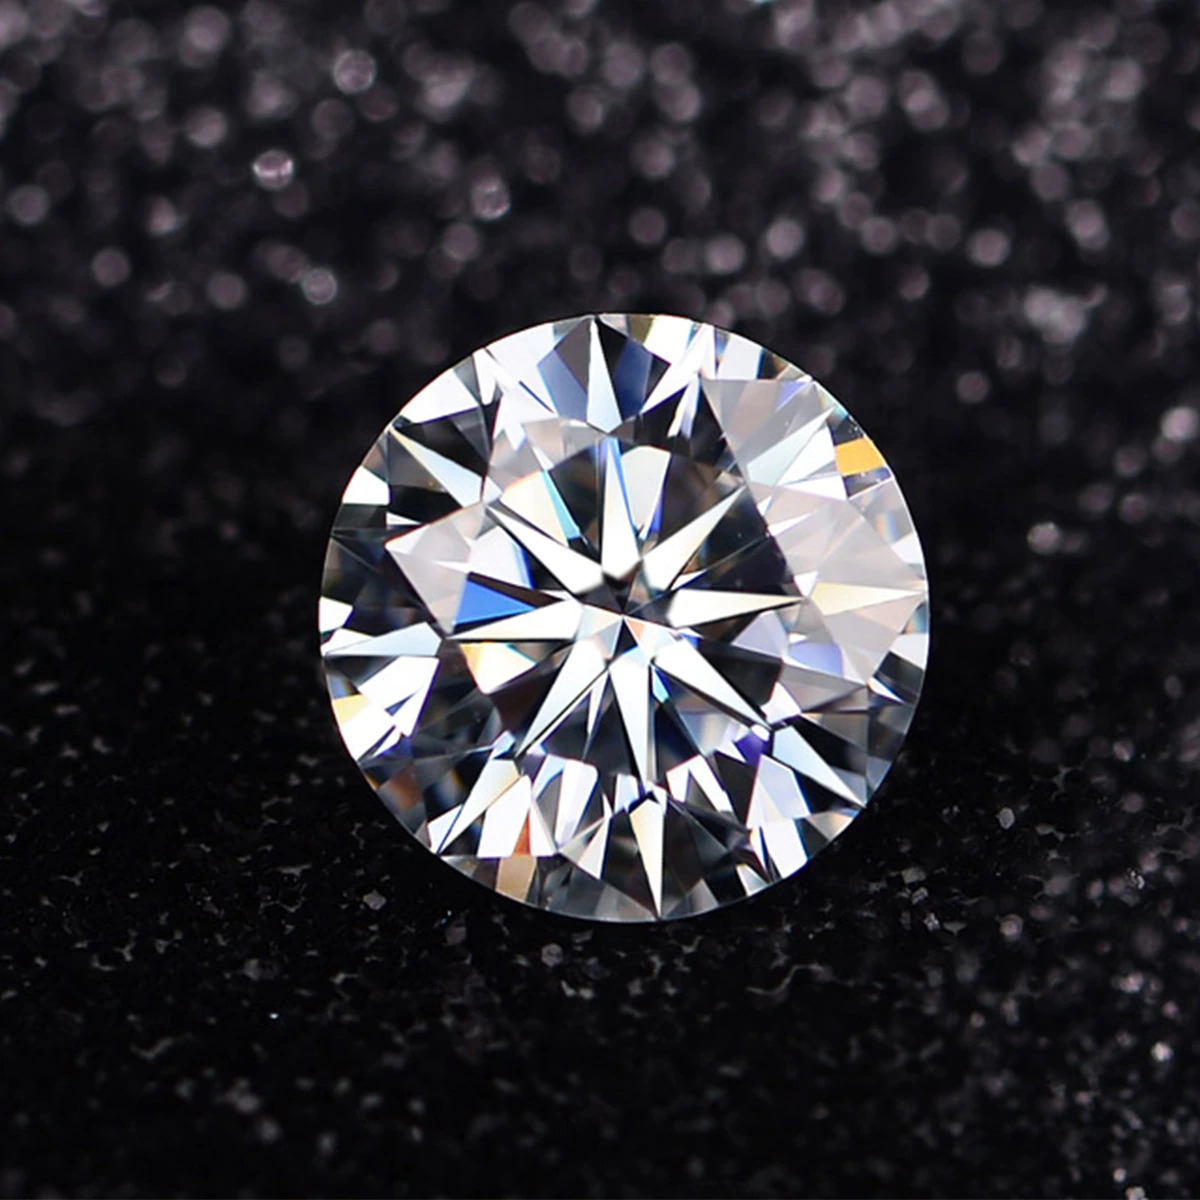 Giá của kim cương tròn là bao nhiêu?